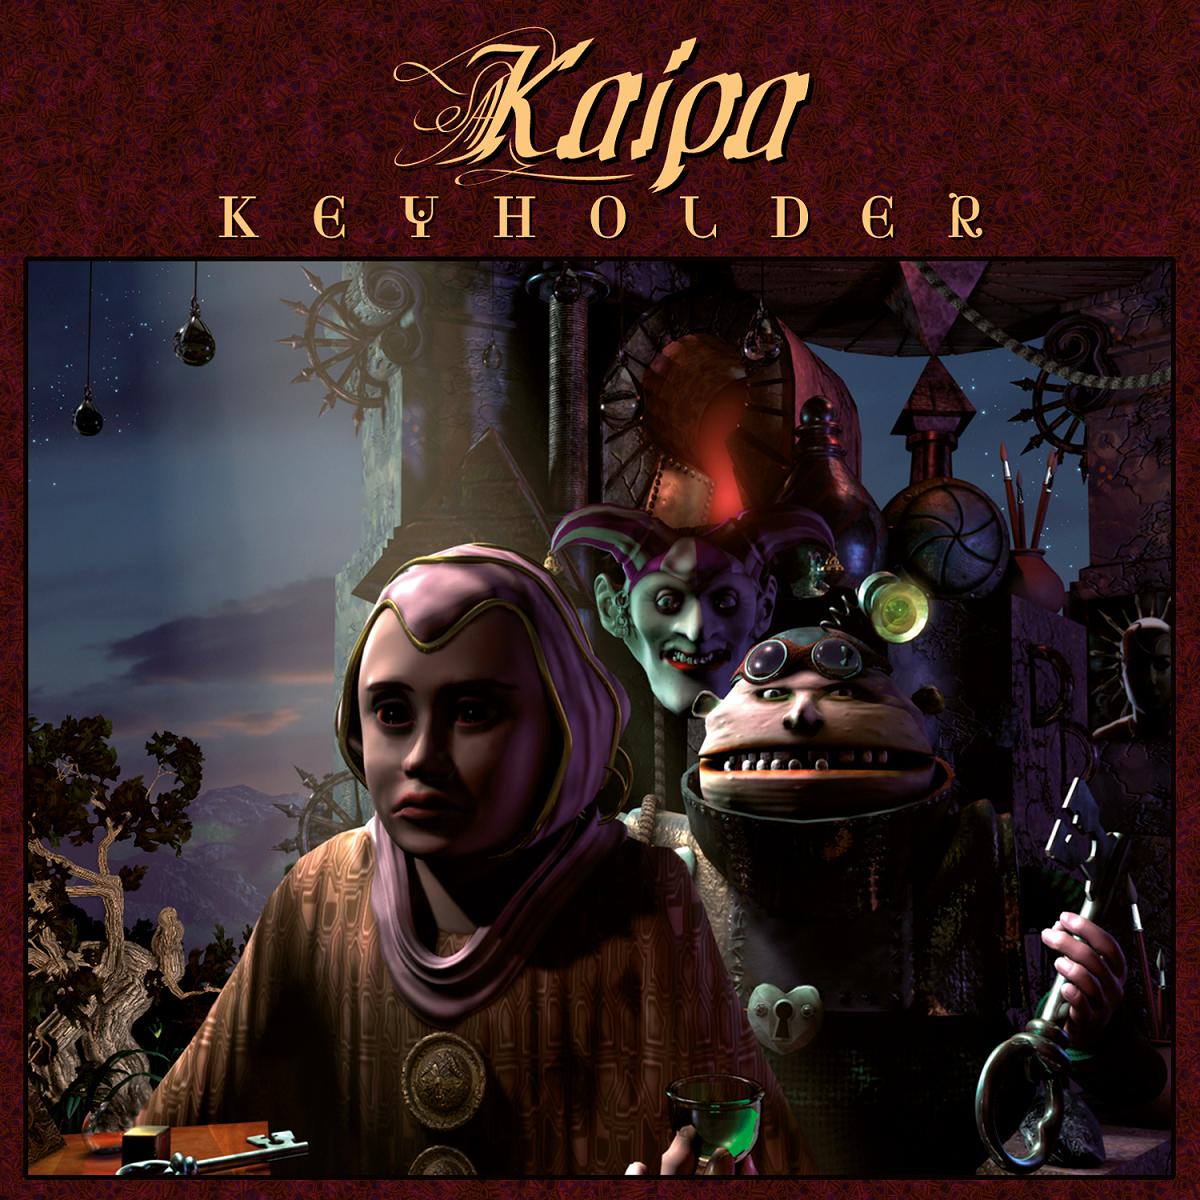 Kaipa - Keyholder (2003)